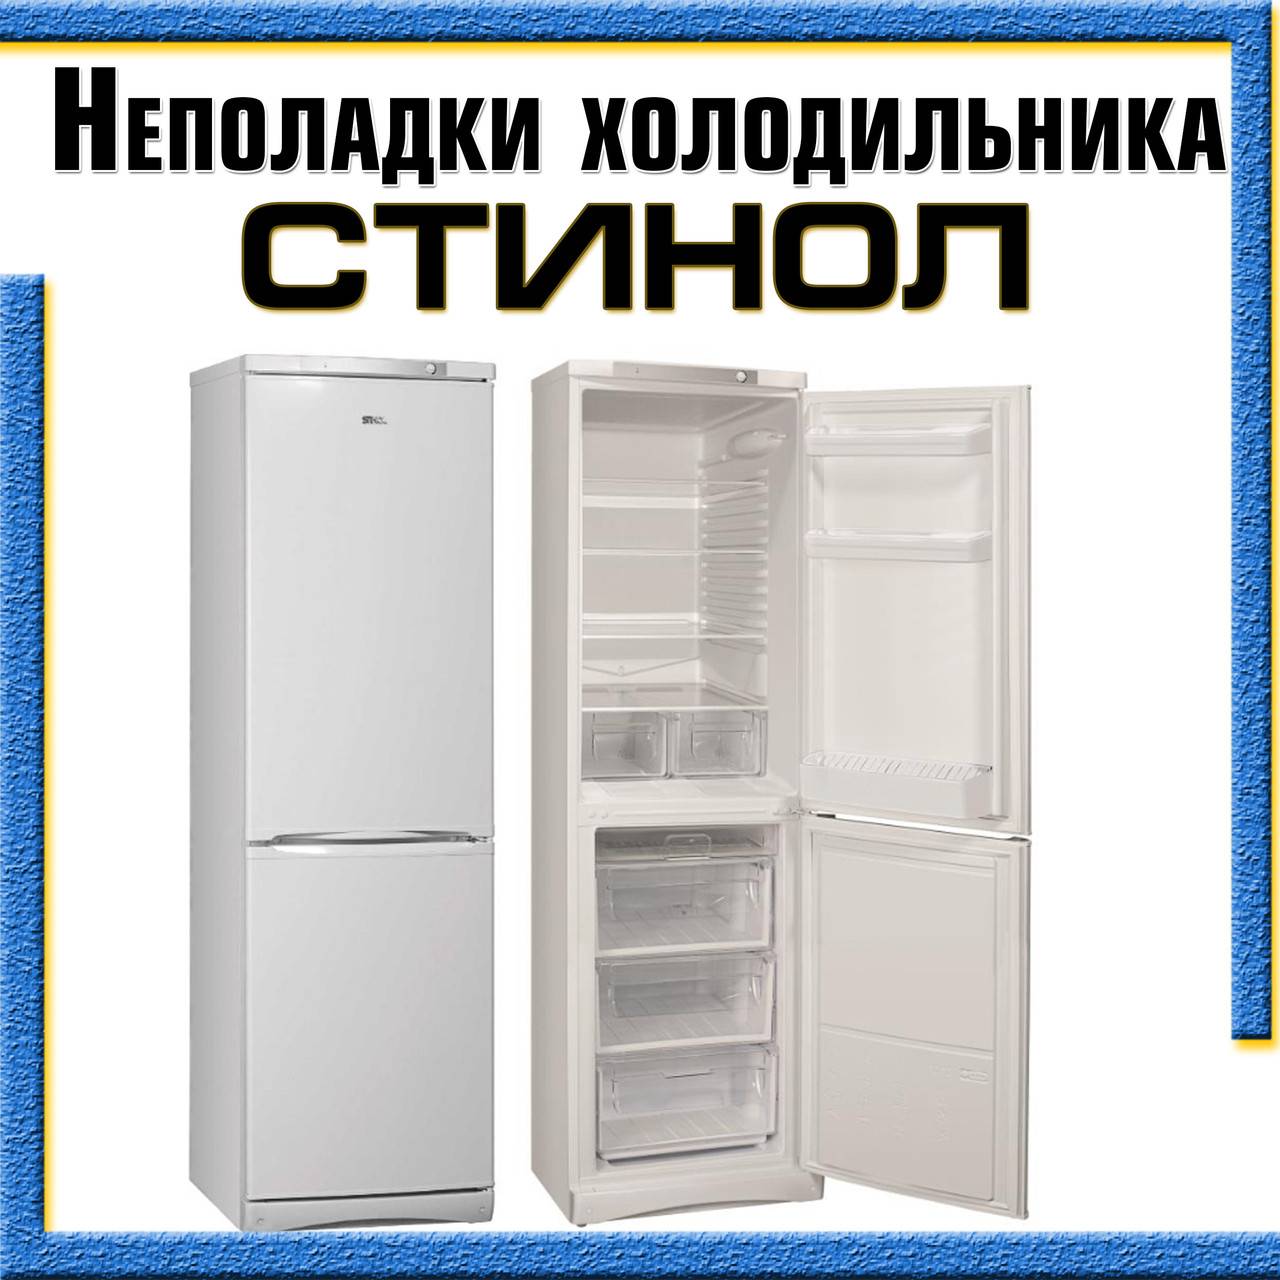 Неисправности холодильника стинол и их устранение своими руками - kupihome.ru